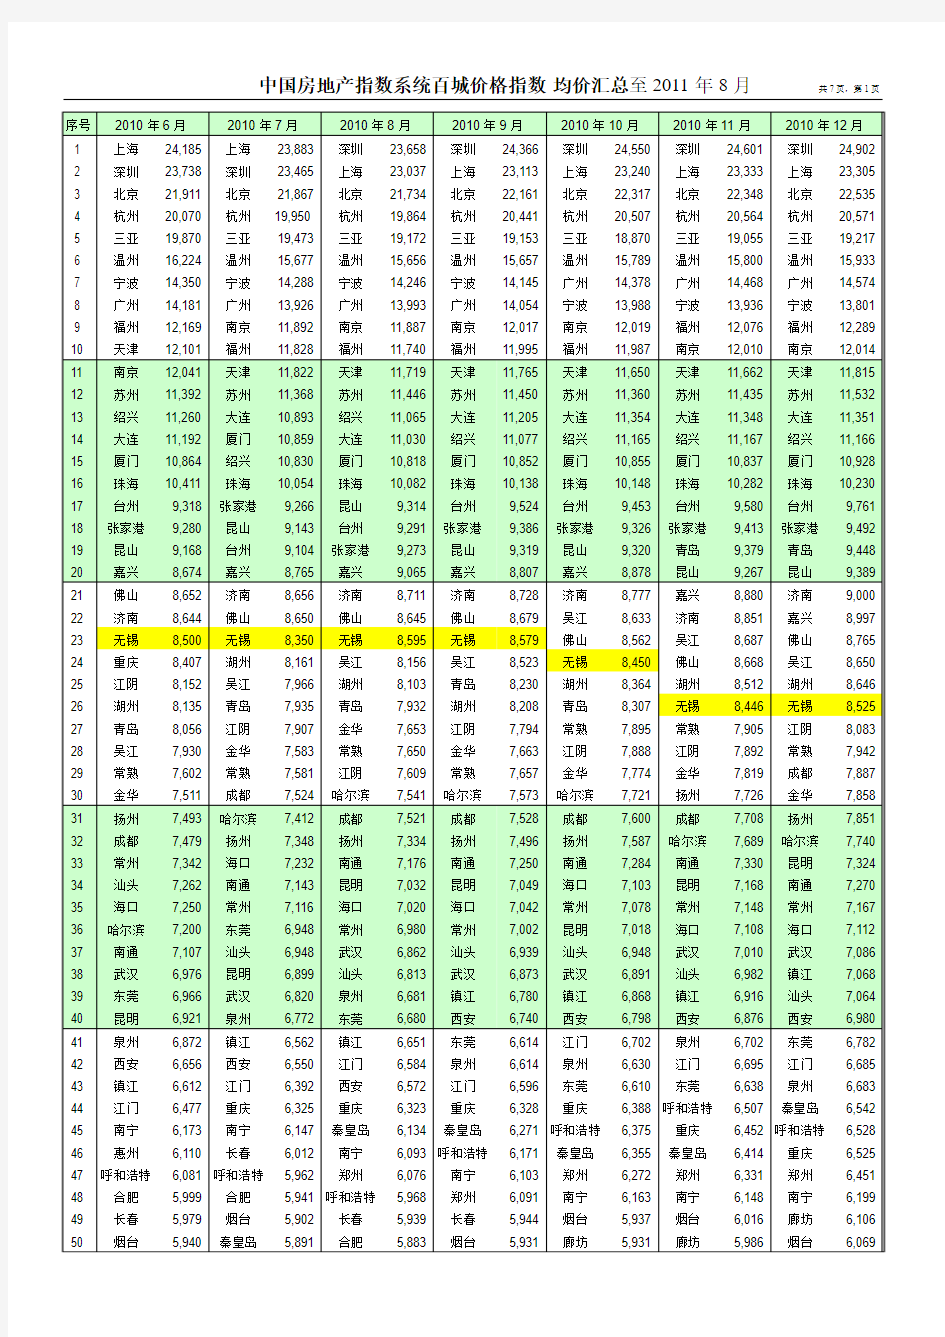 中国房地产指数系统百城价格指数2010.06—2011.09